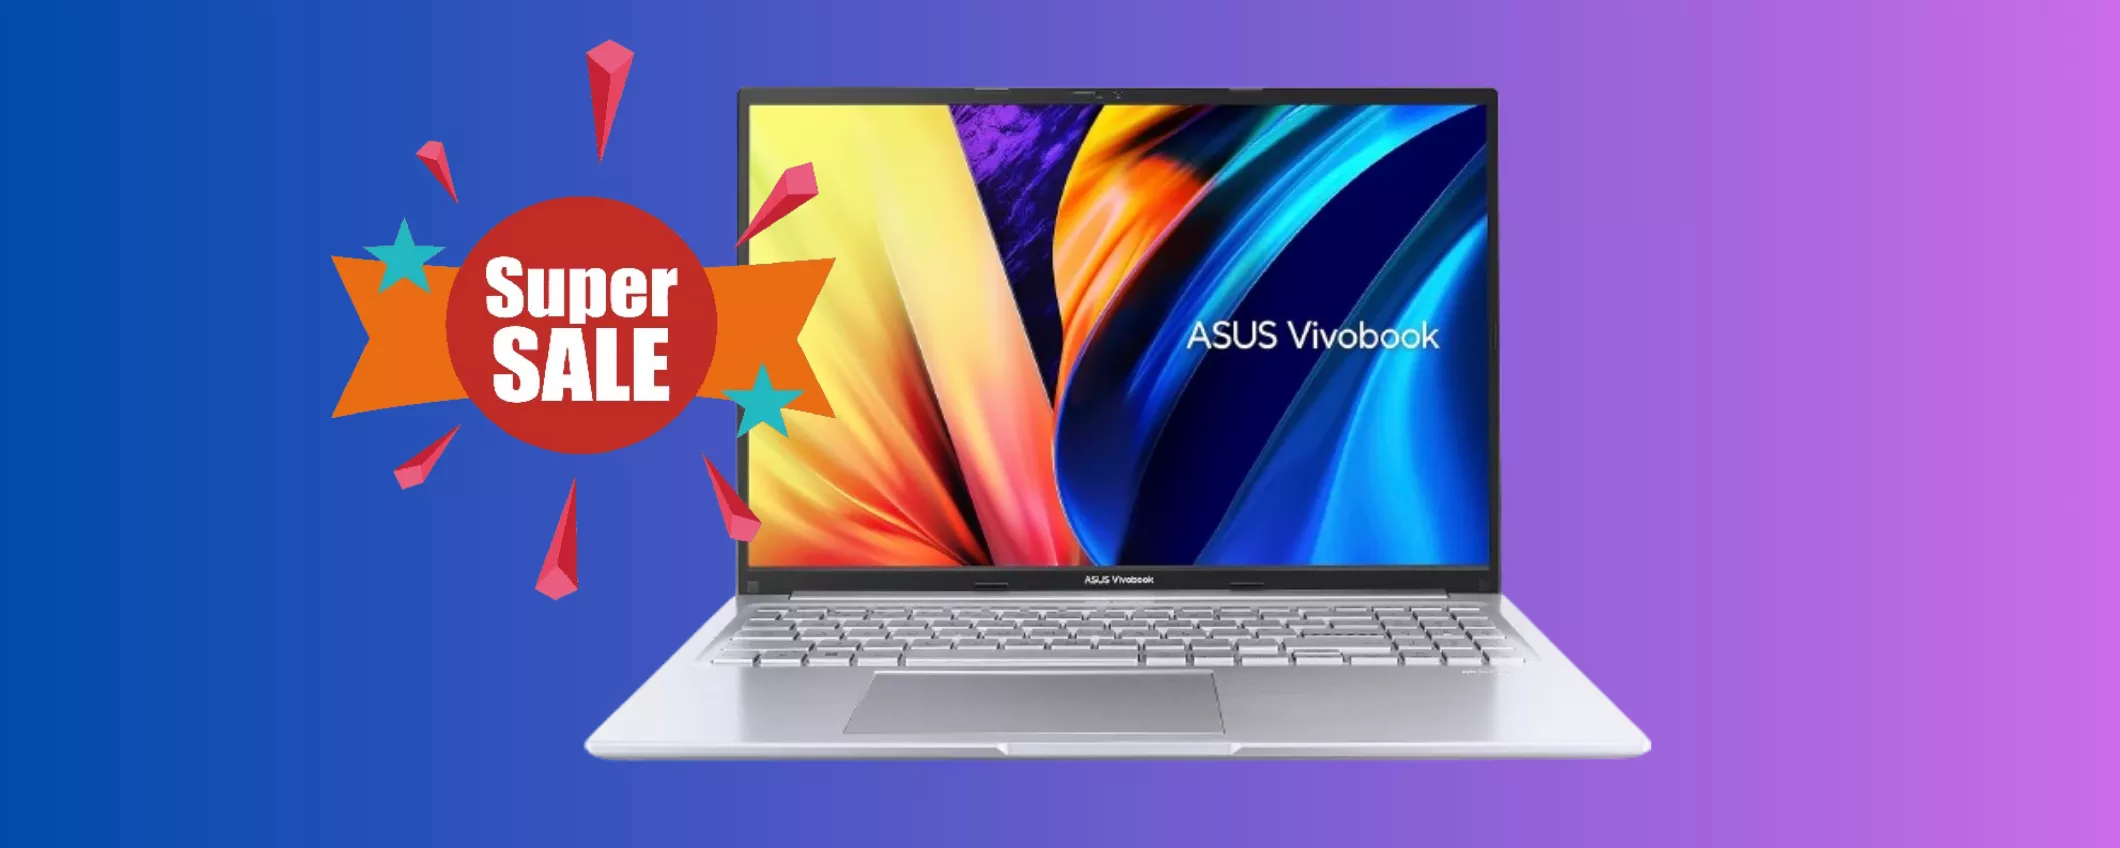 ASUS Vivobook 15: il PC più RICERCATO sul mercato in OFFERTA BOMBA